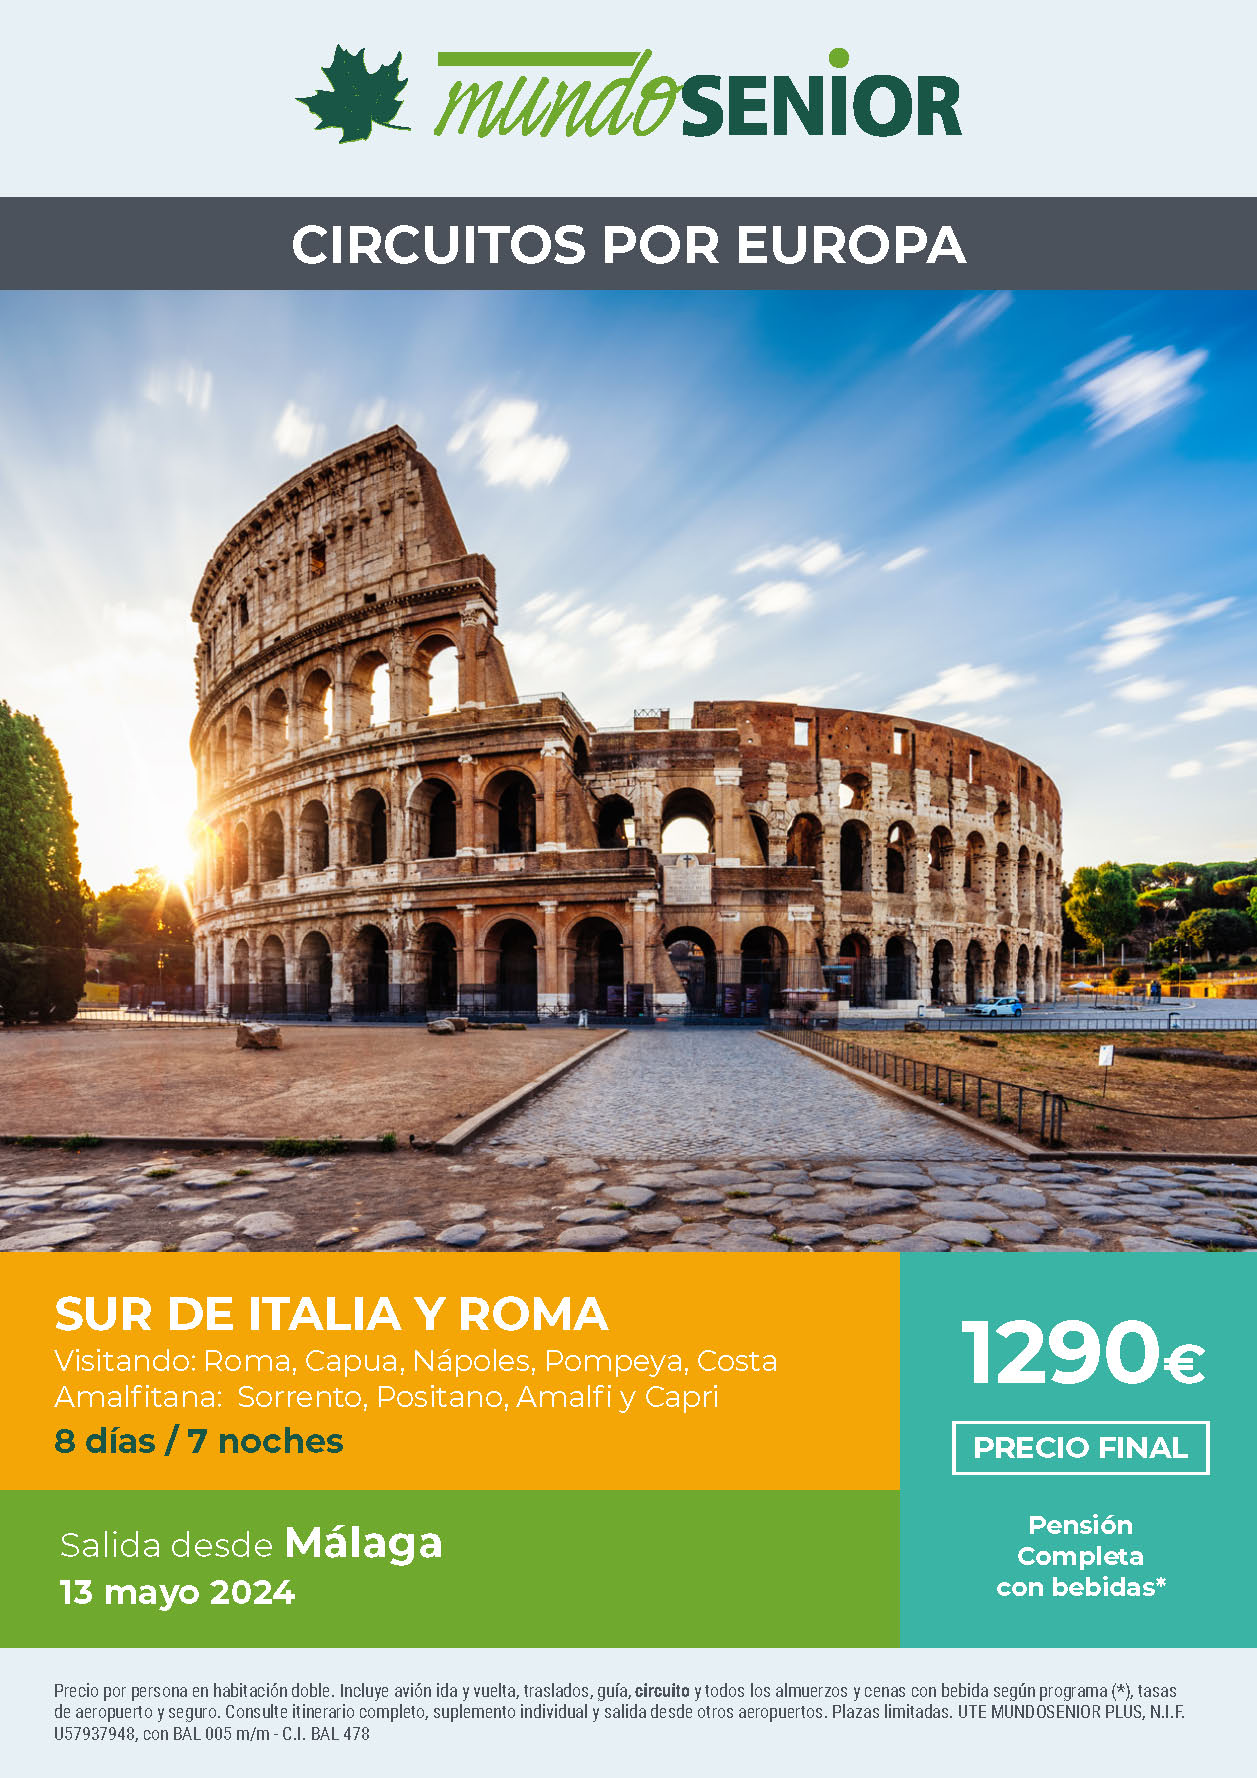 Oferta Mundo Senior circuito Sur de Italia y Roma Pension Completa 8 dias salida 13 mayo 2024 en vuelo directo desde Malaga